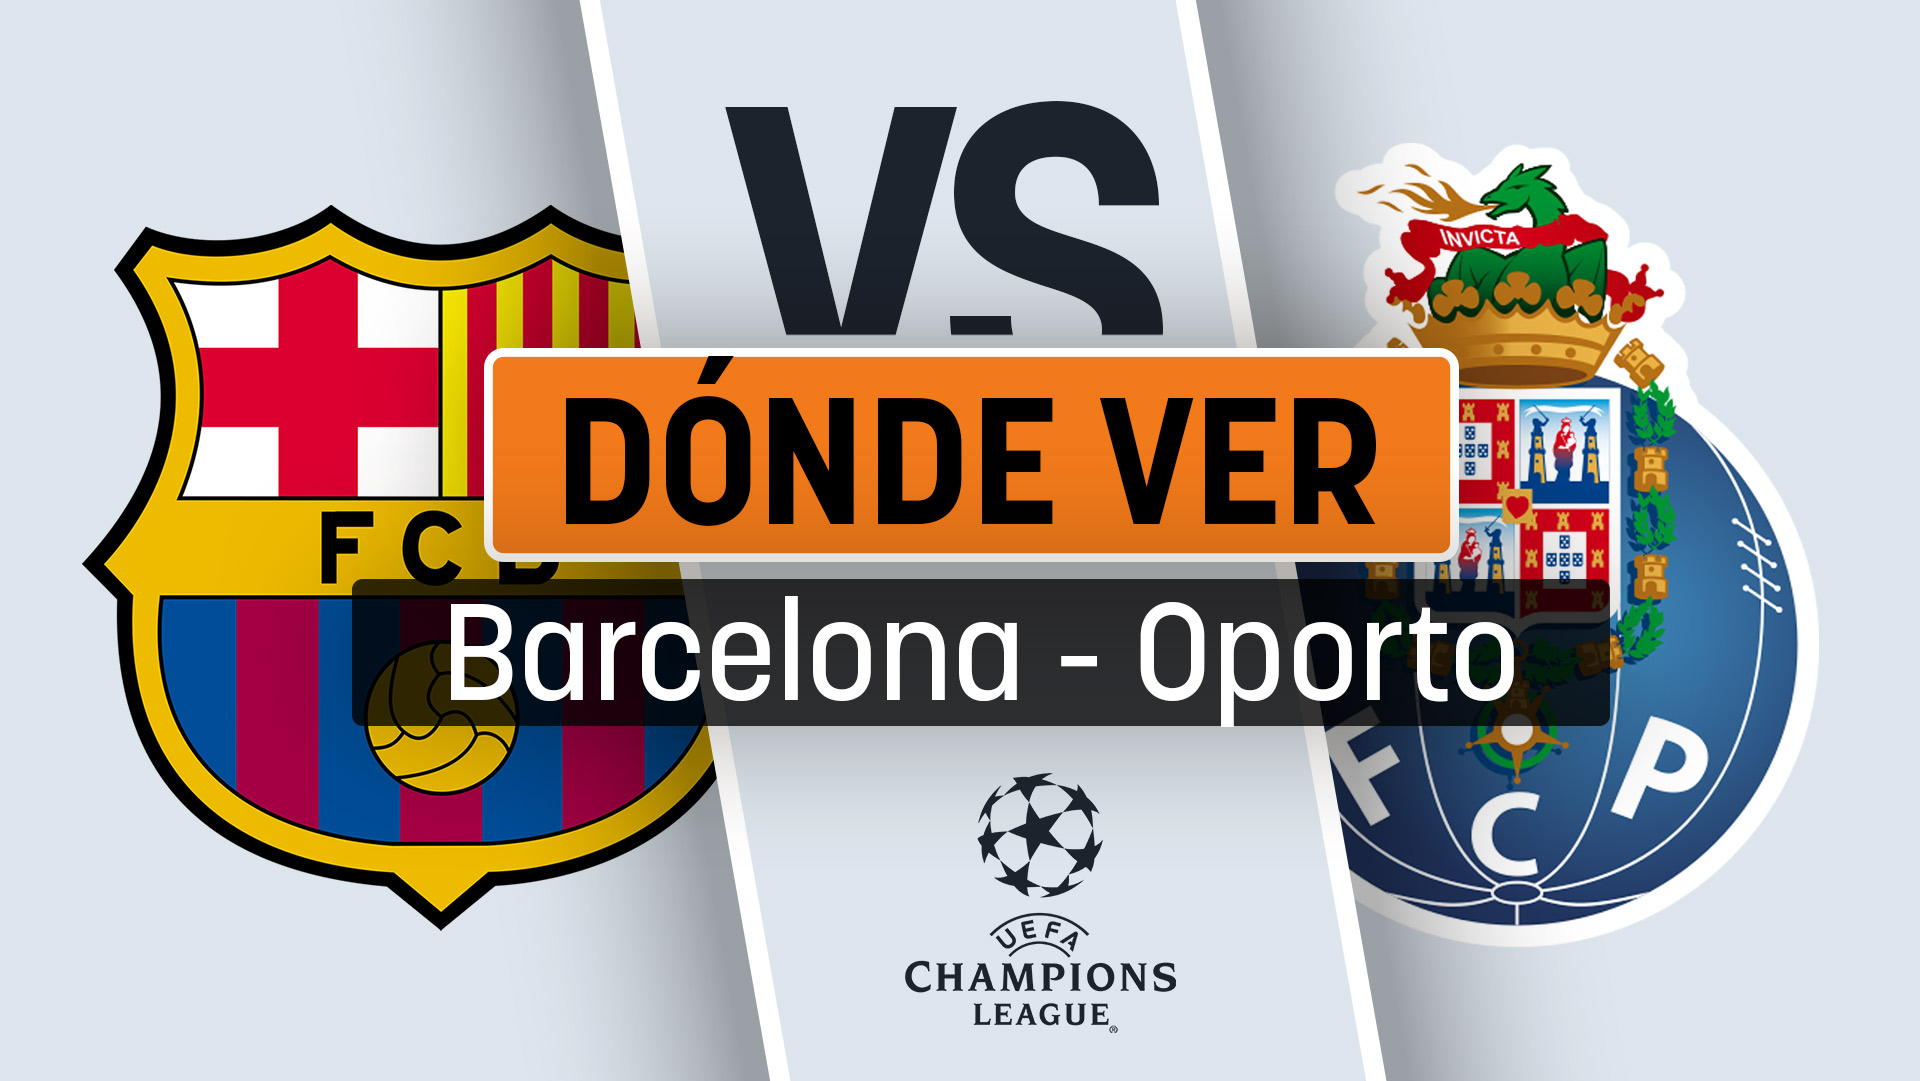 Dónde ver el partido del Barcelona hoy de Champions League contra el Oporto en directo por televisión y online.